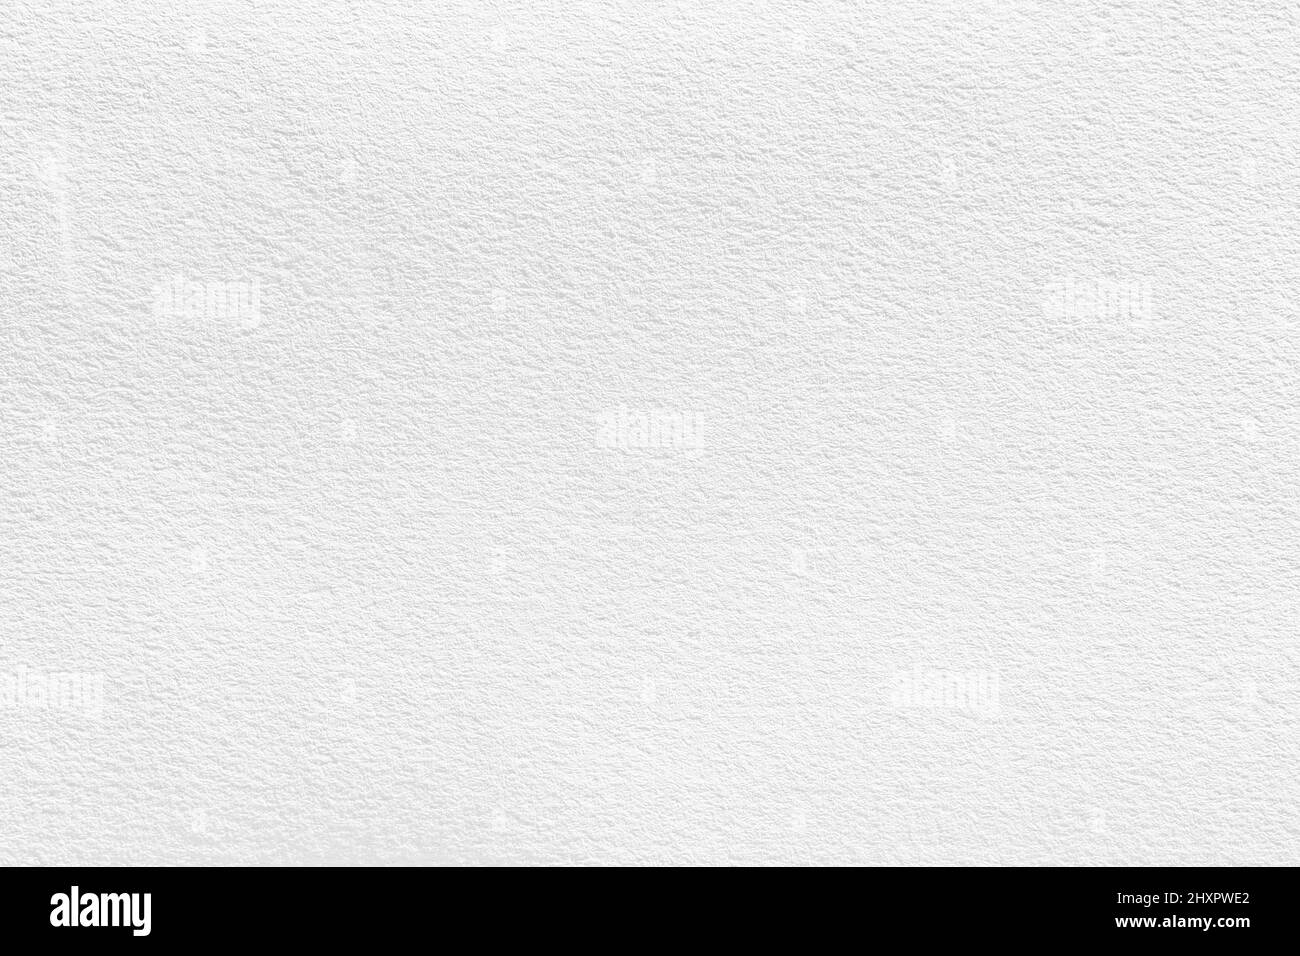 Acquerello bianco immagini e fotografie stock ad alta risoluzione - Alamy